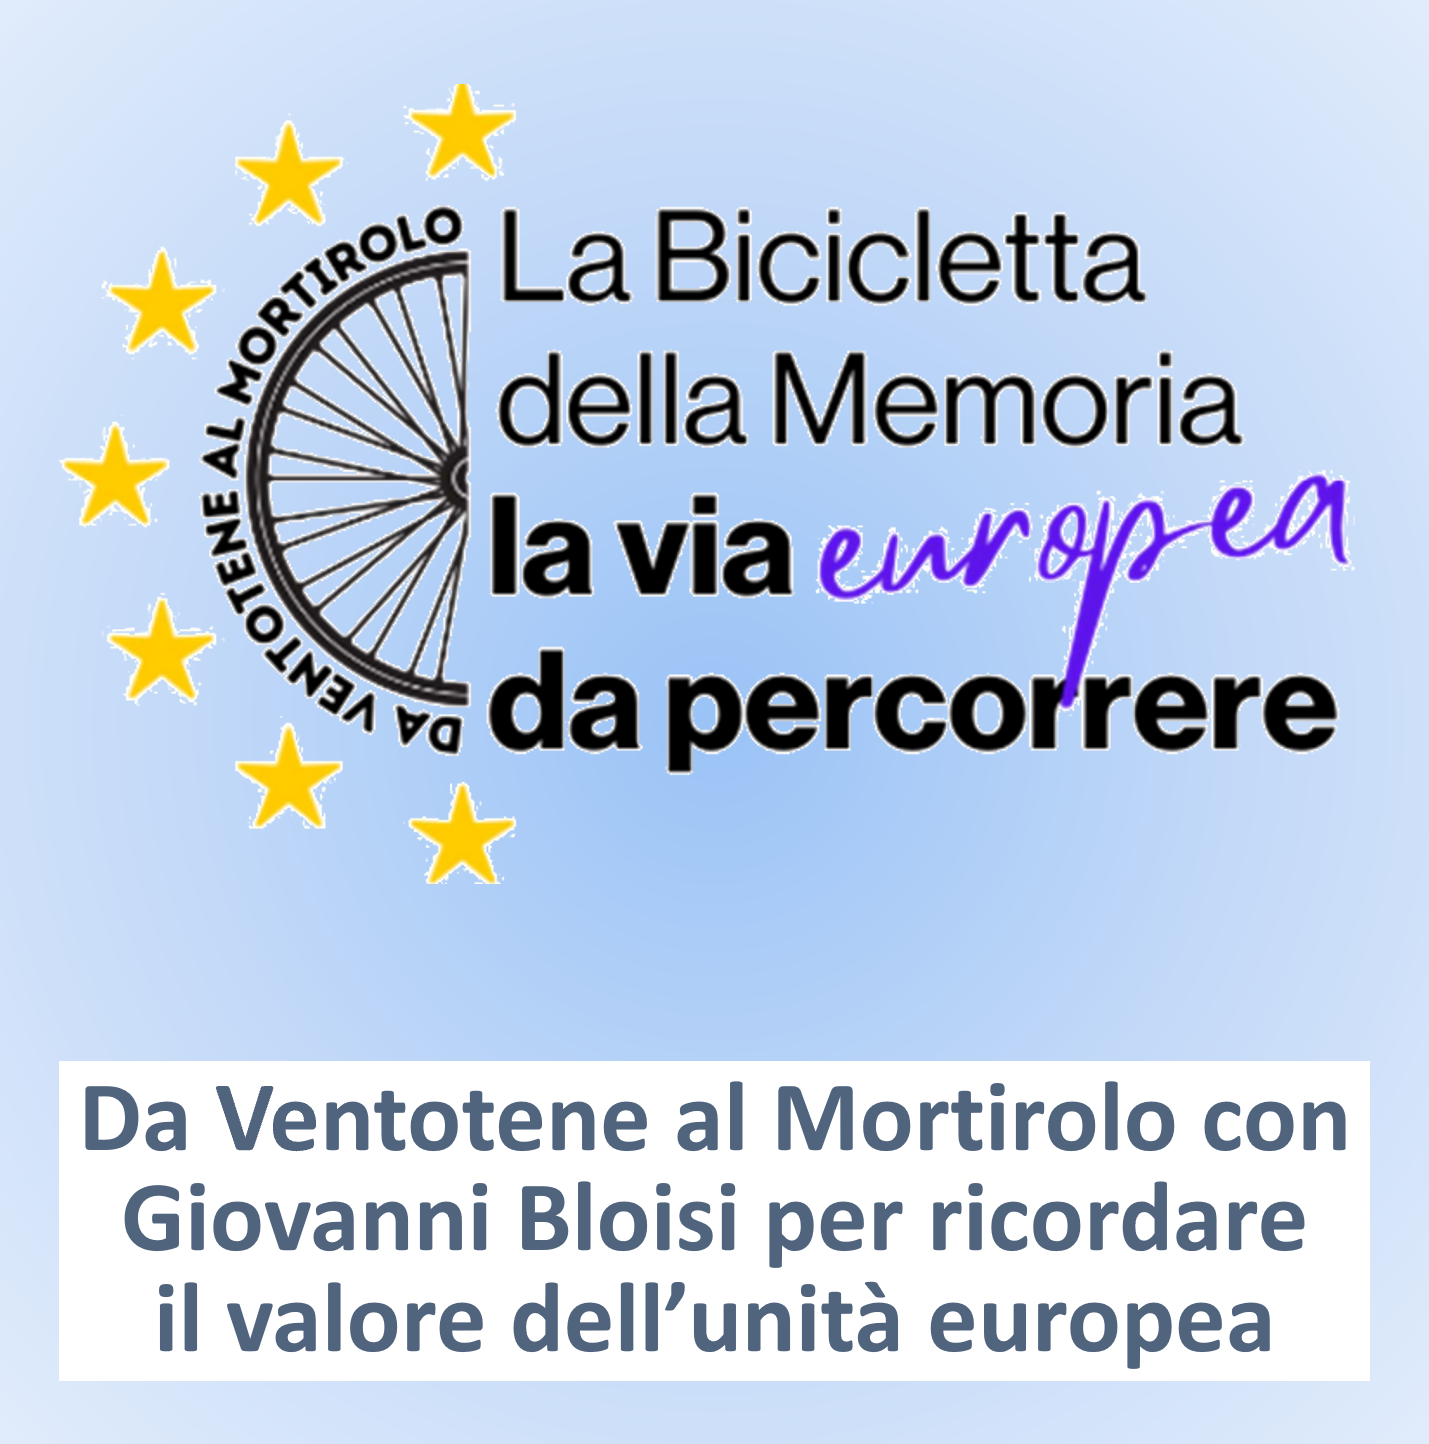 La bicicletta europea